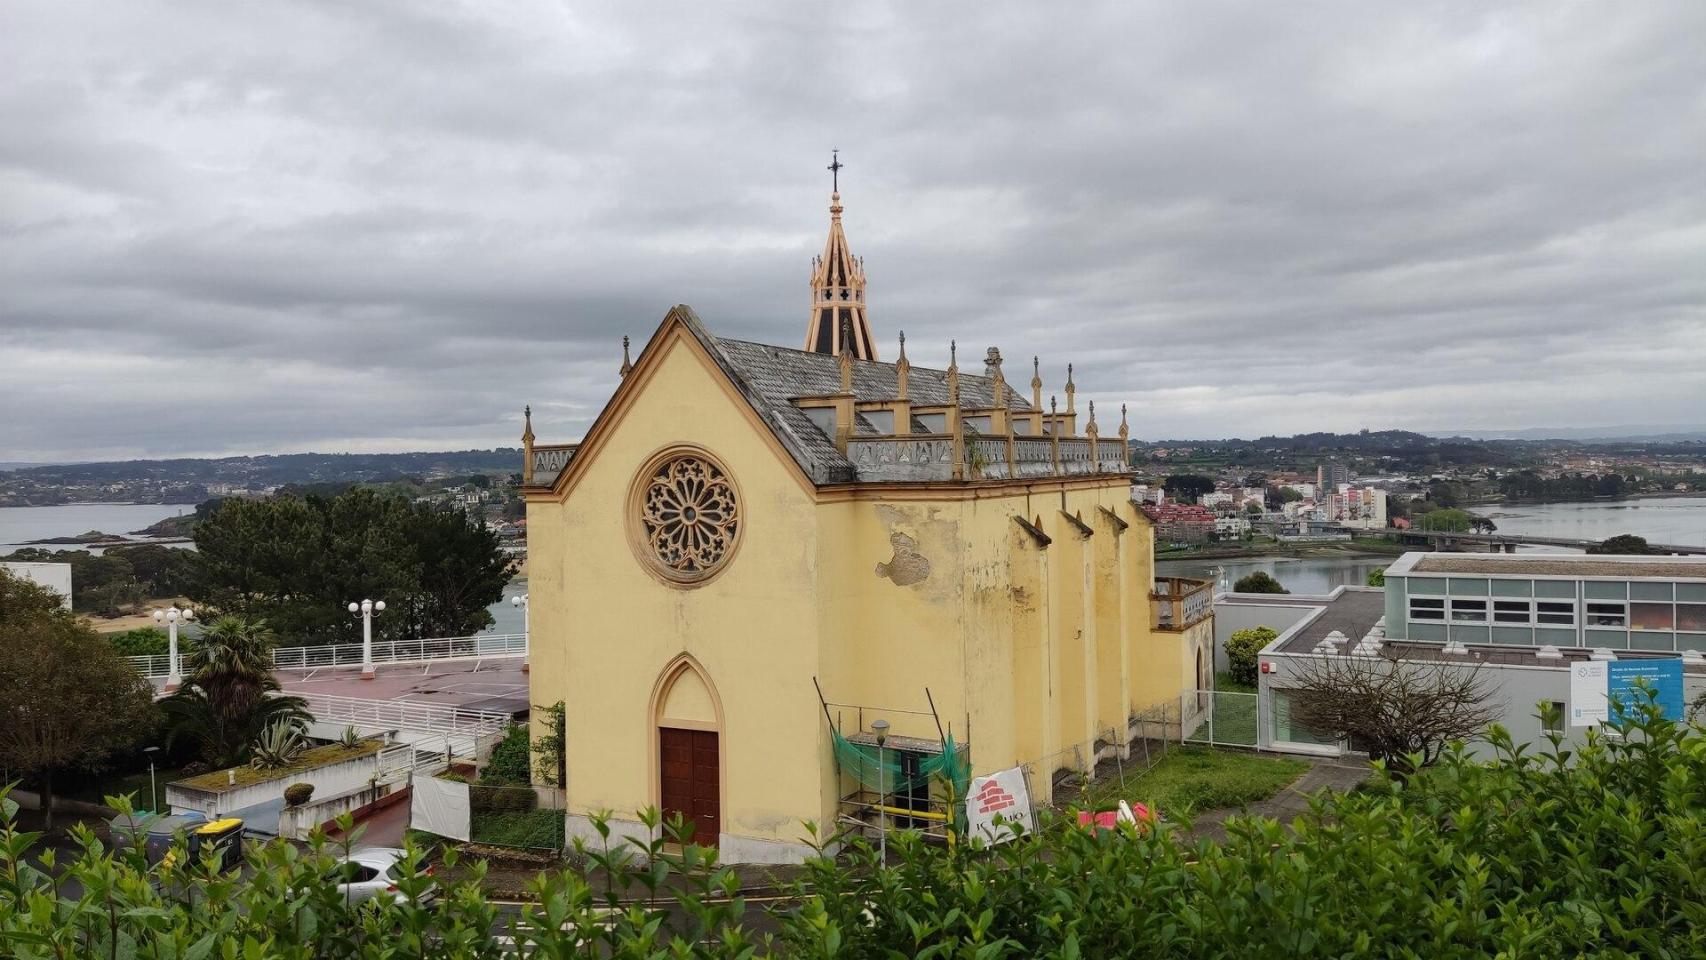 La iglesia de la fundación Labaca de A Coruña: una historia en tres actos (segundo acto)